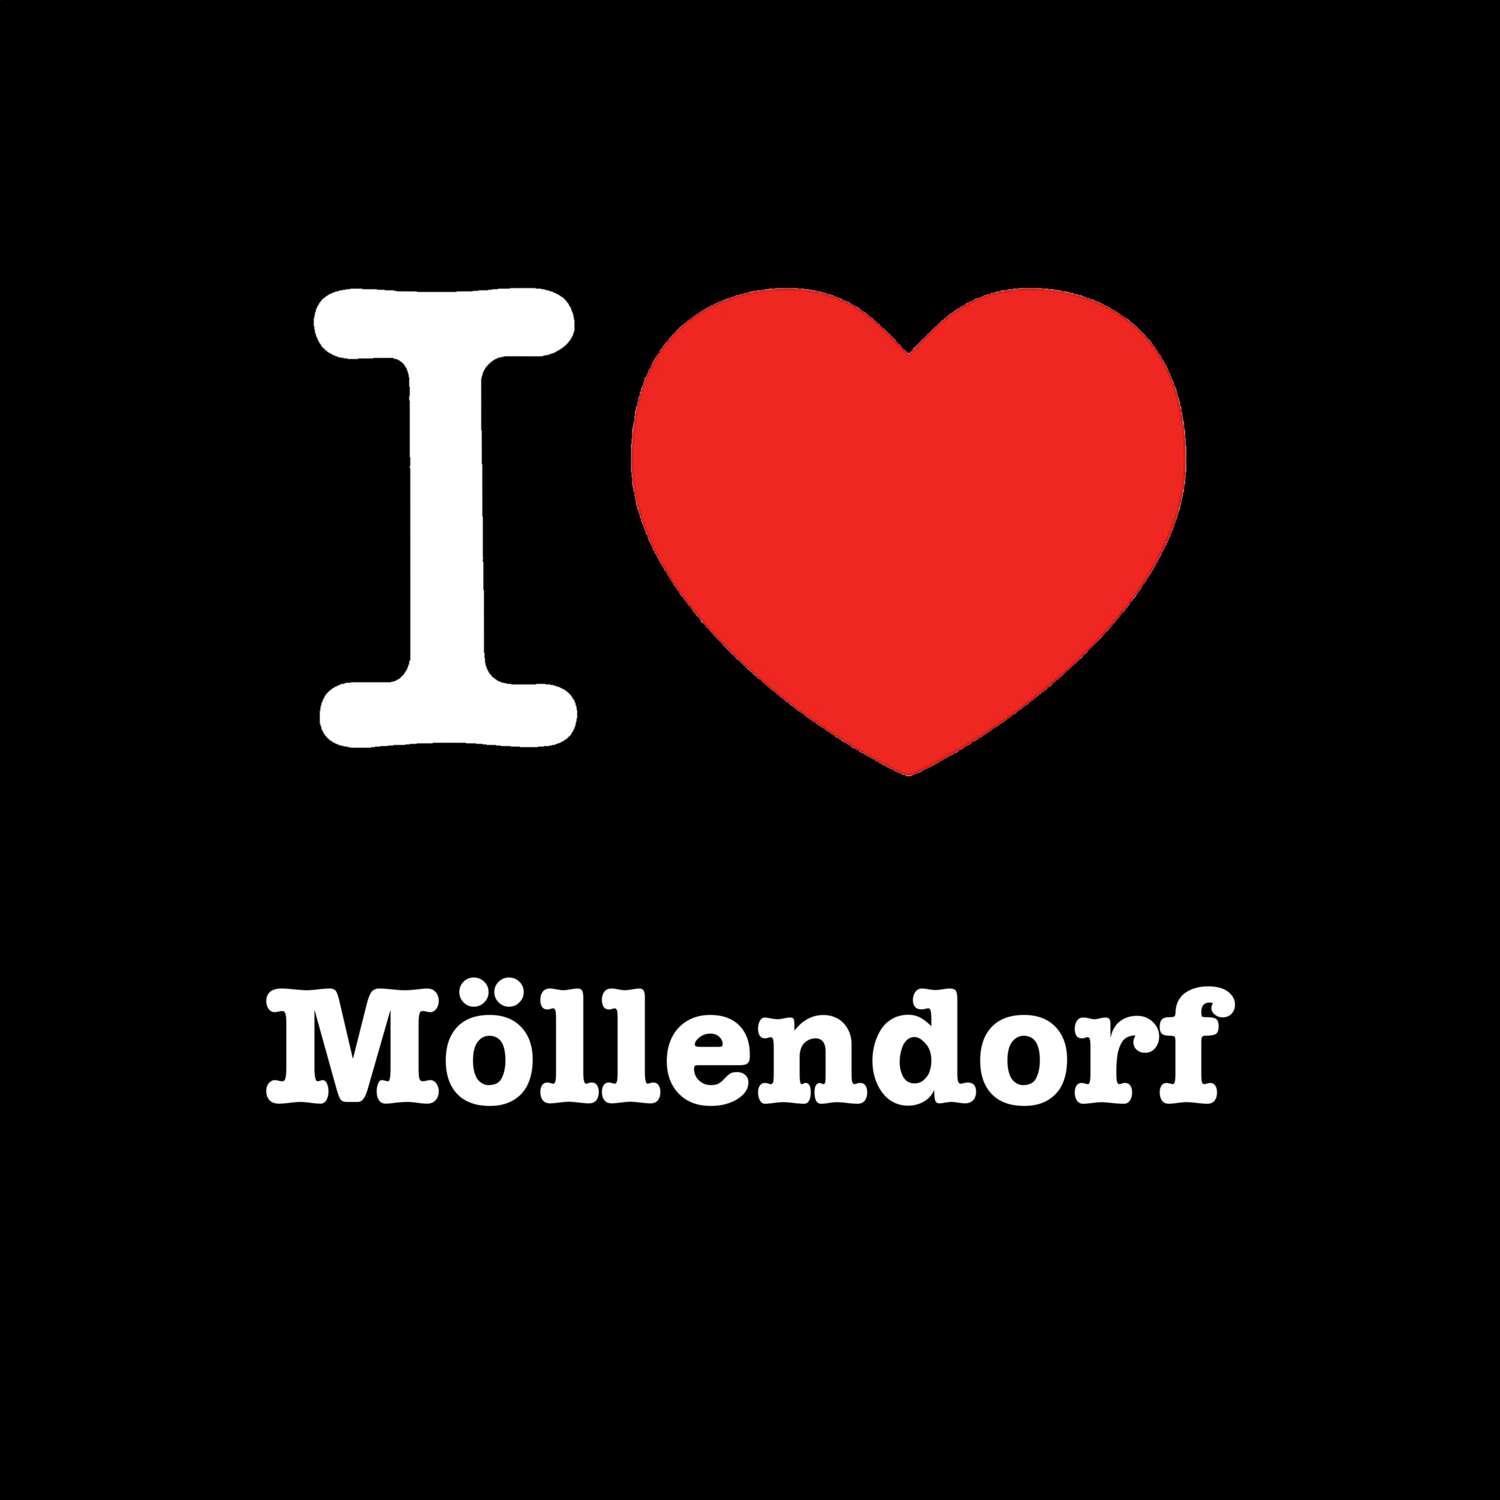 Möllendorf T-Shirt »I love«